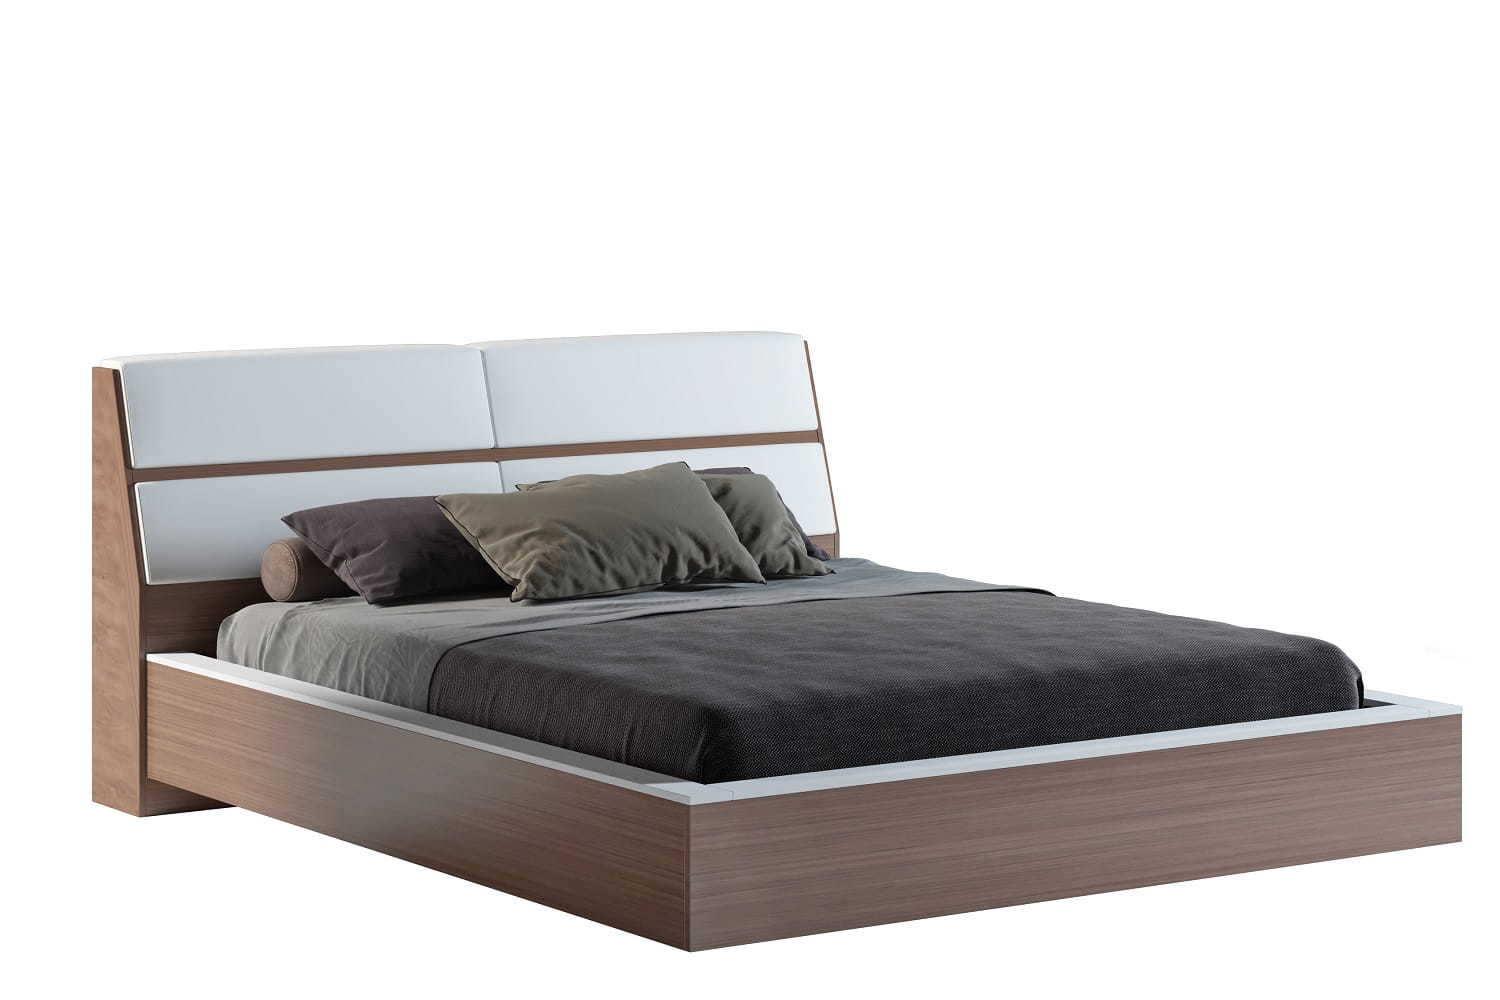 Купить кровать в симферополе недорого. АСМ модуль кровать Кристалл. Кровать Кристалл 1 s. Кровать «Кристалл 3». Кровать АСМ мебель Неаполь.